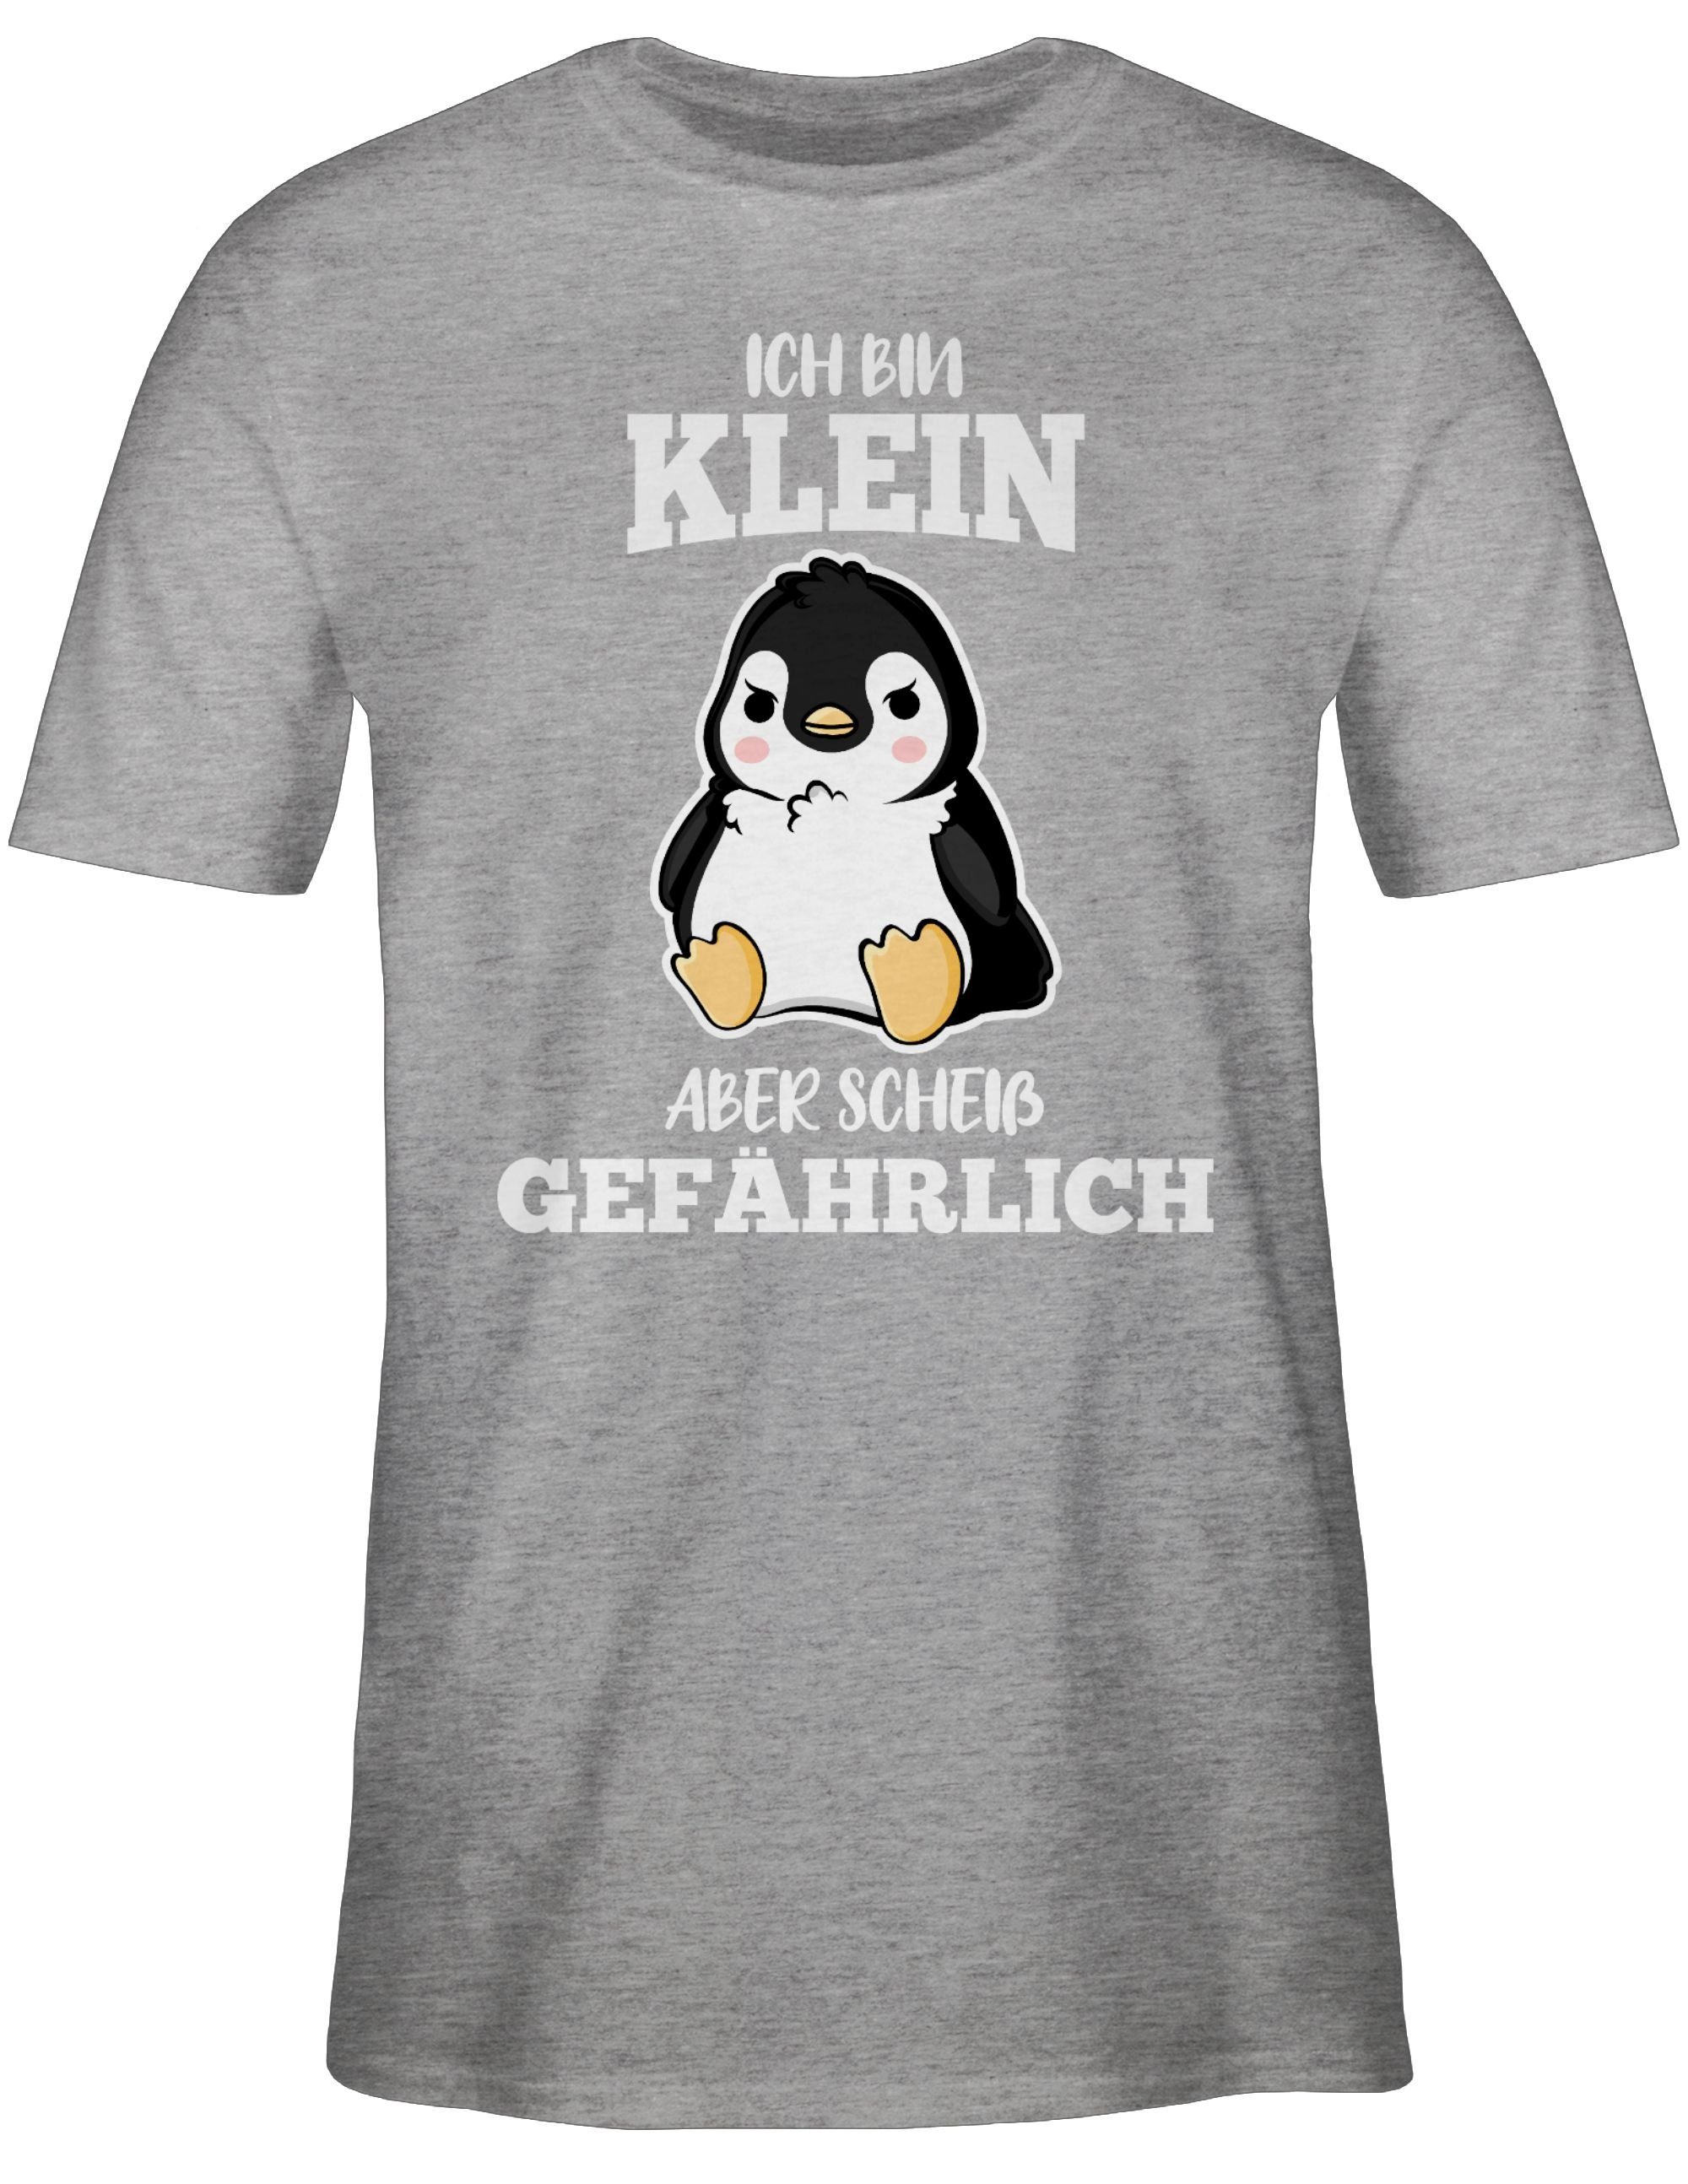 Shirtracer T-Shirt Ich bin klein aber scheiß gefährlich Pinguin weiß Sprüche Statement mit Spruch 02 Grau meliert